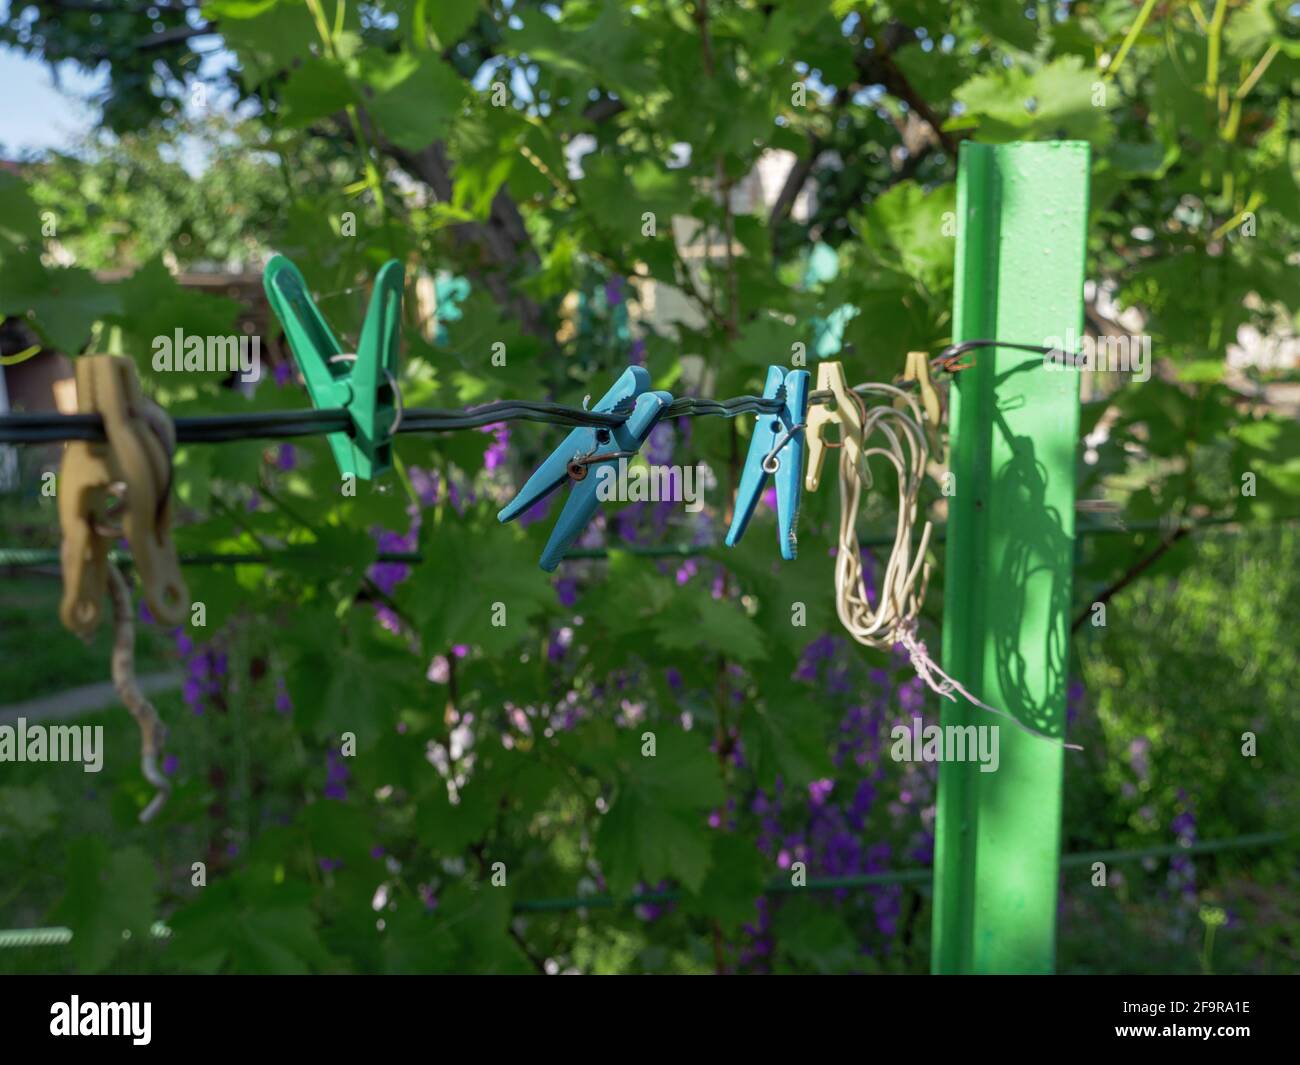 Bunte Stifte hängen an einem Draht im Garten im Freien. Ländlicher Hintergrund, einfaches Leben zu Hause Konzept. Stockfoto